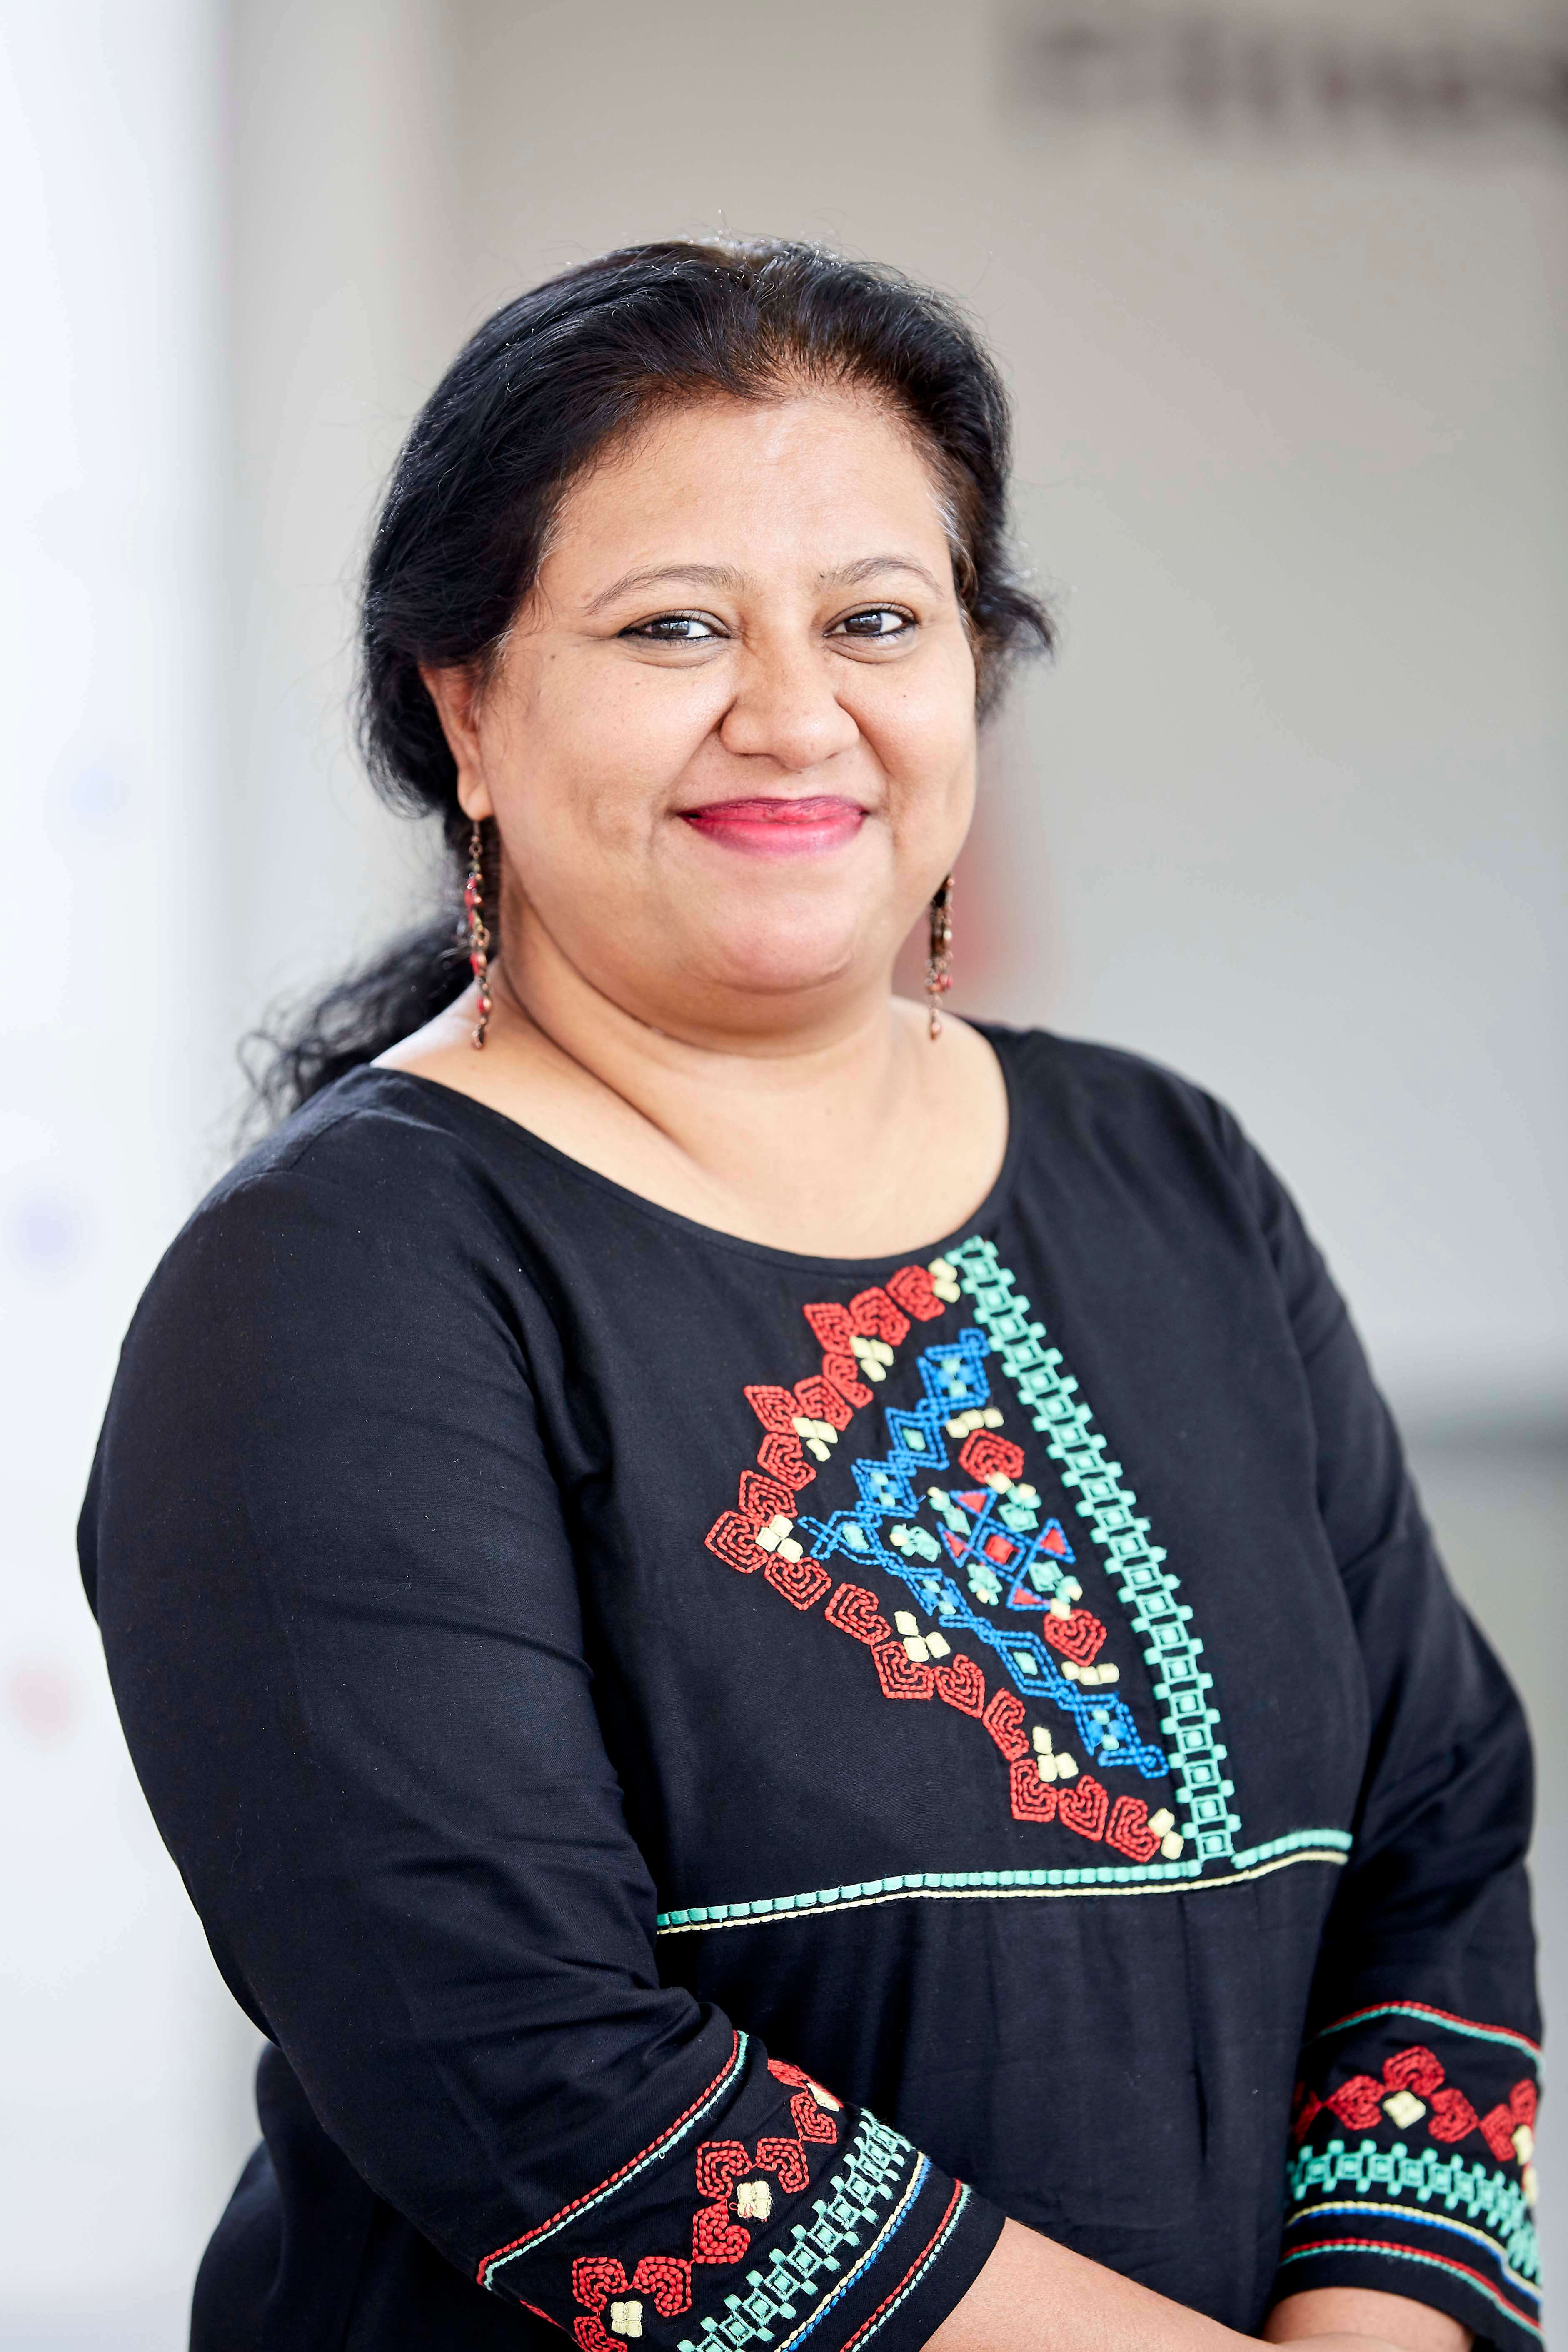 Dr. Anu Singh - PBL Coordinator and Facilitator